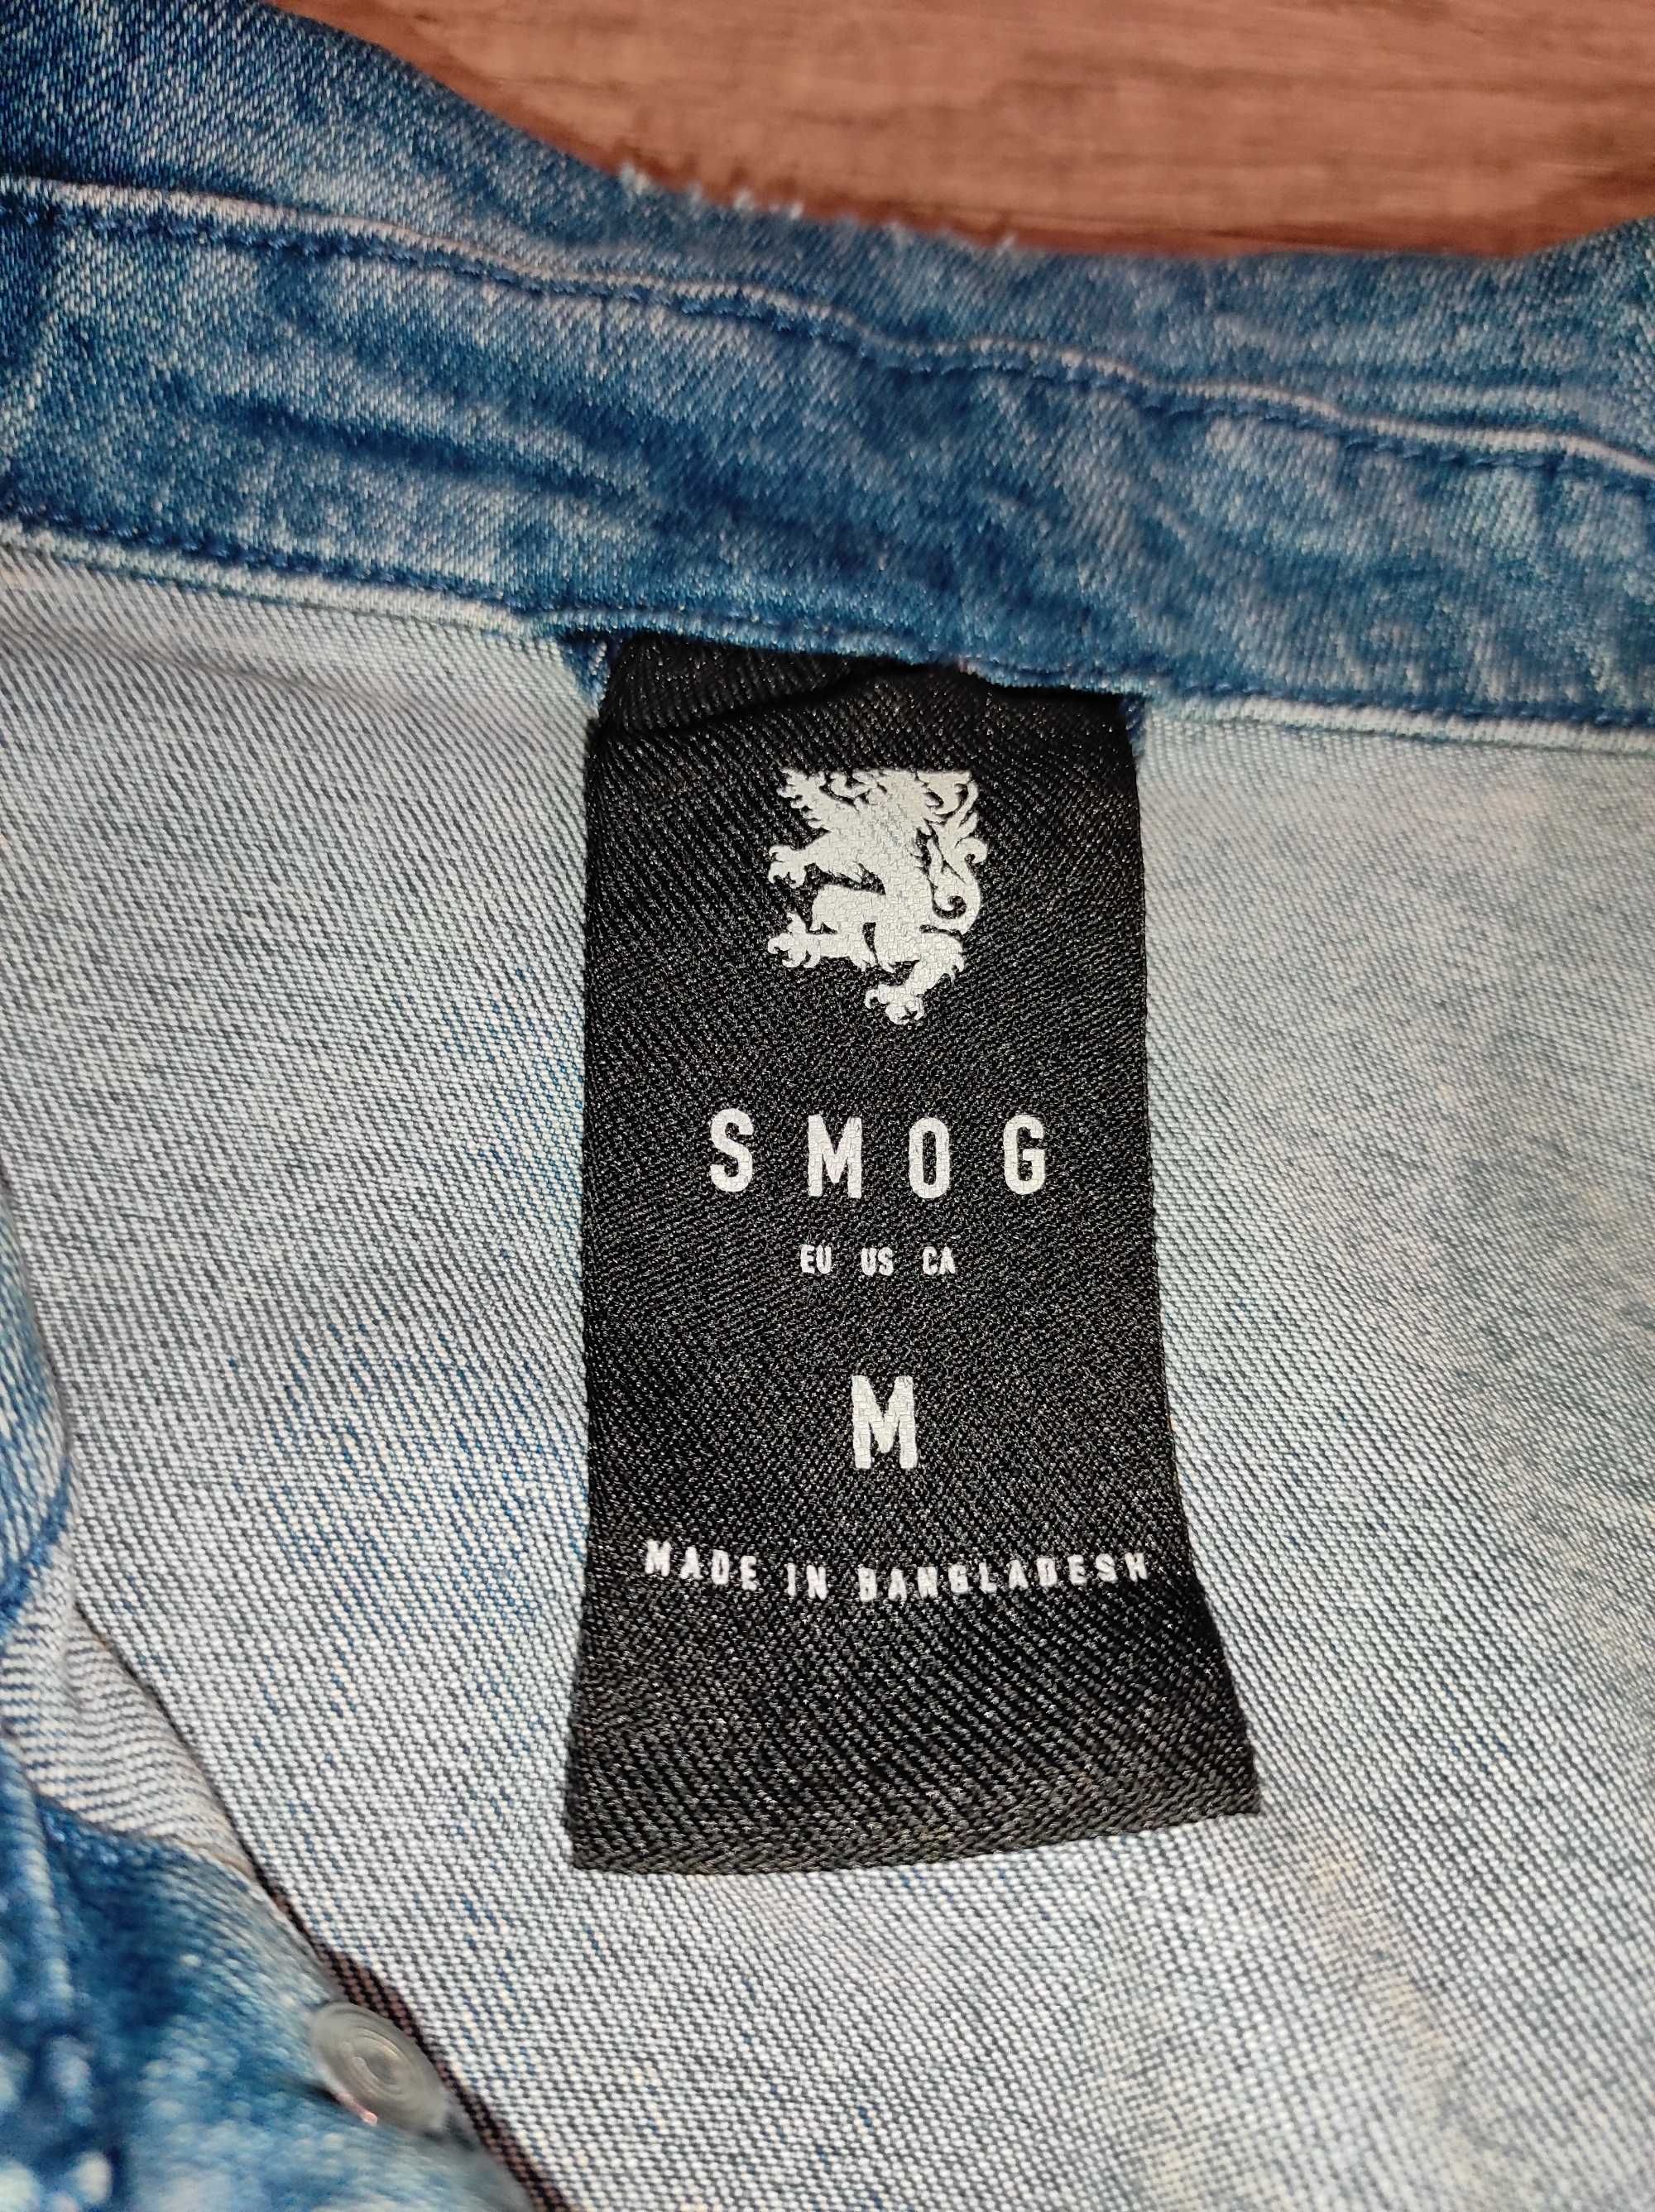 Kurtka jeansowa firmy smog (new yorker)